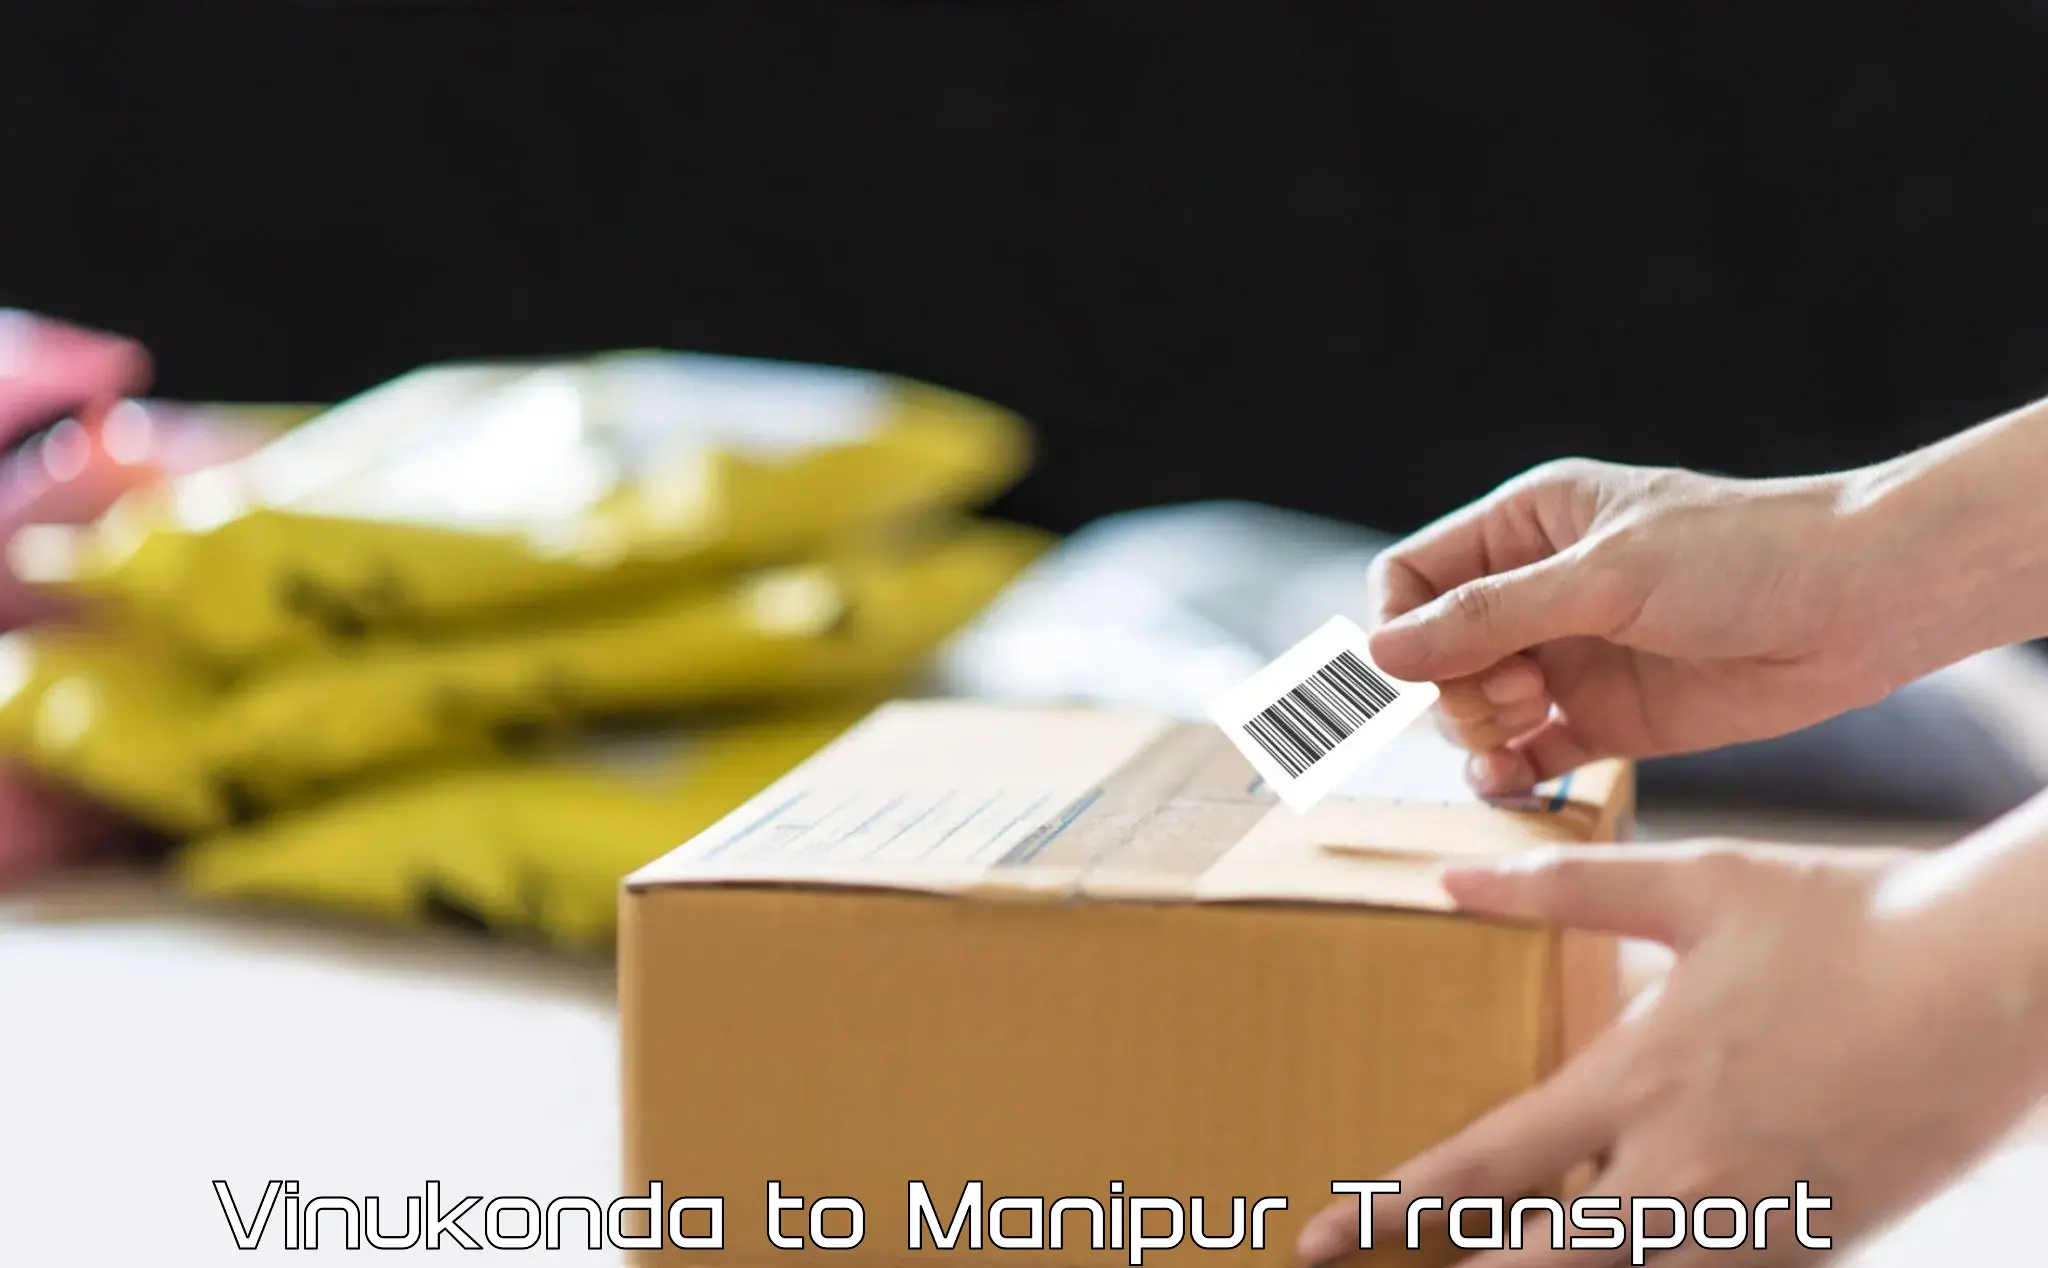 Transportation solution services Vinukonda to Moirang